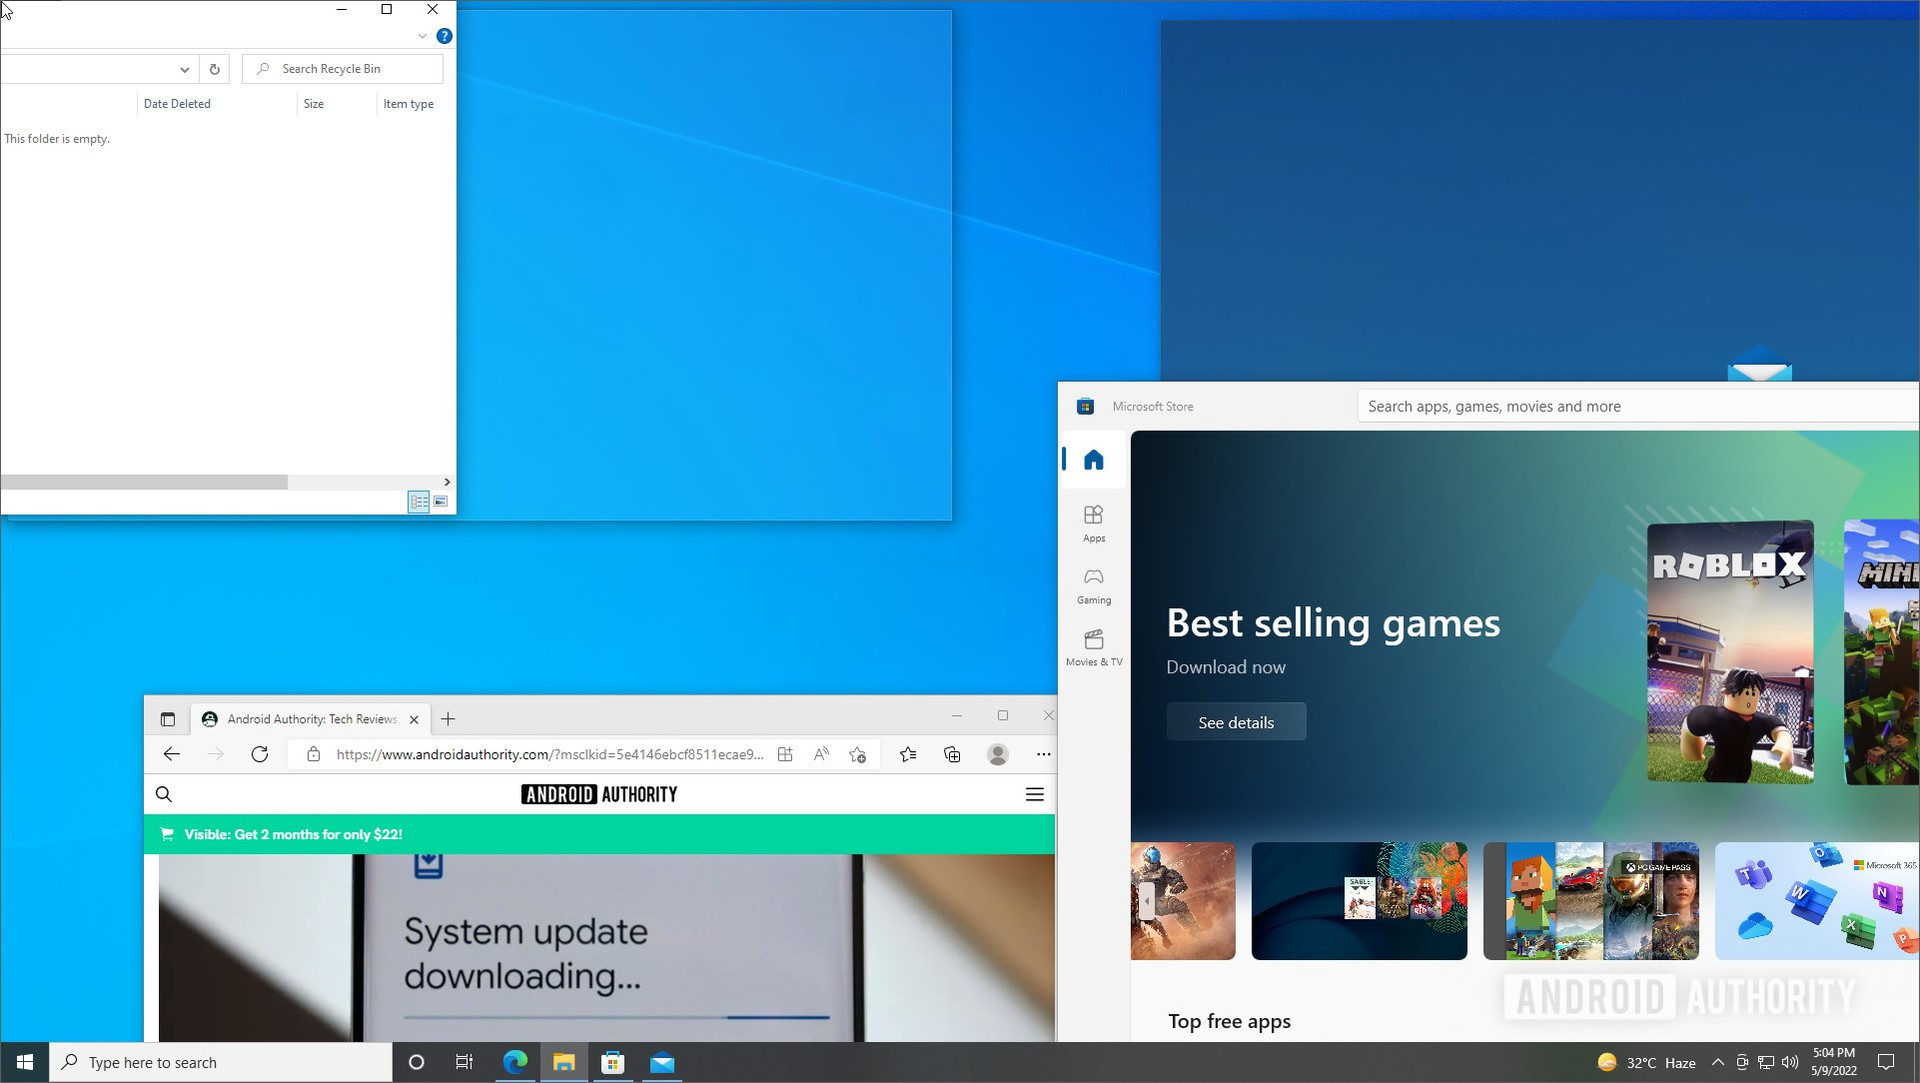 Windows 10 split screen snap assist window 1